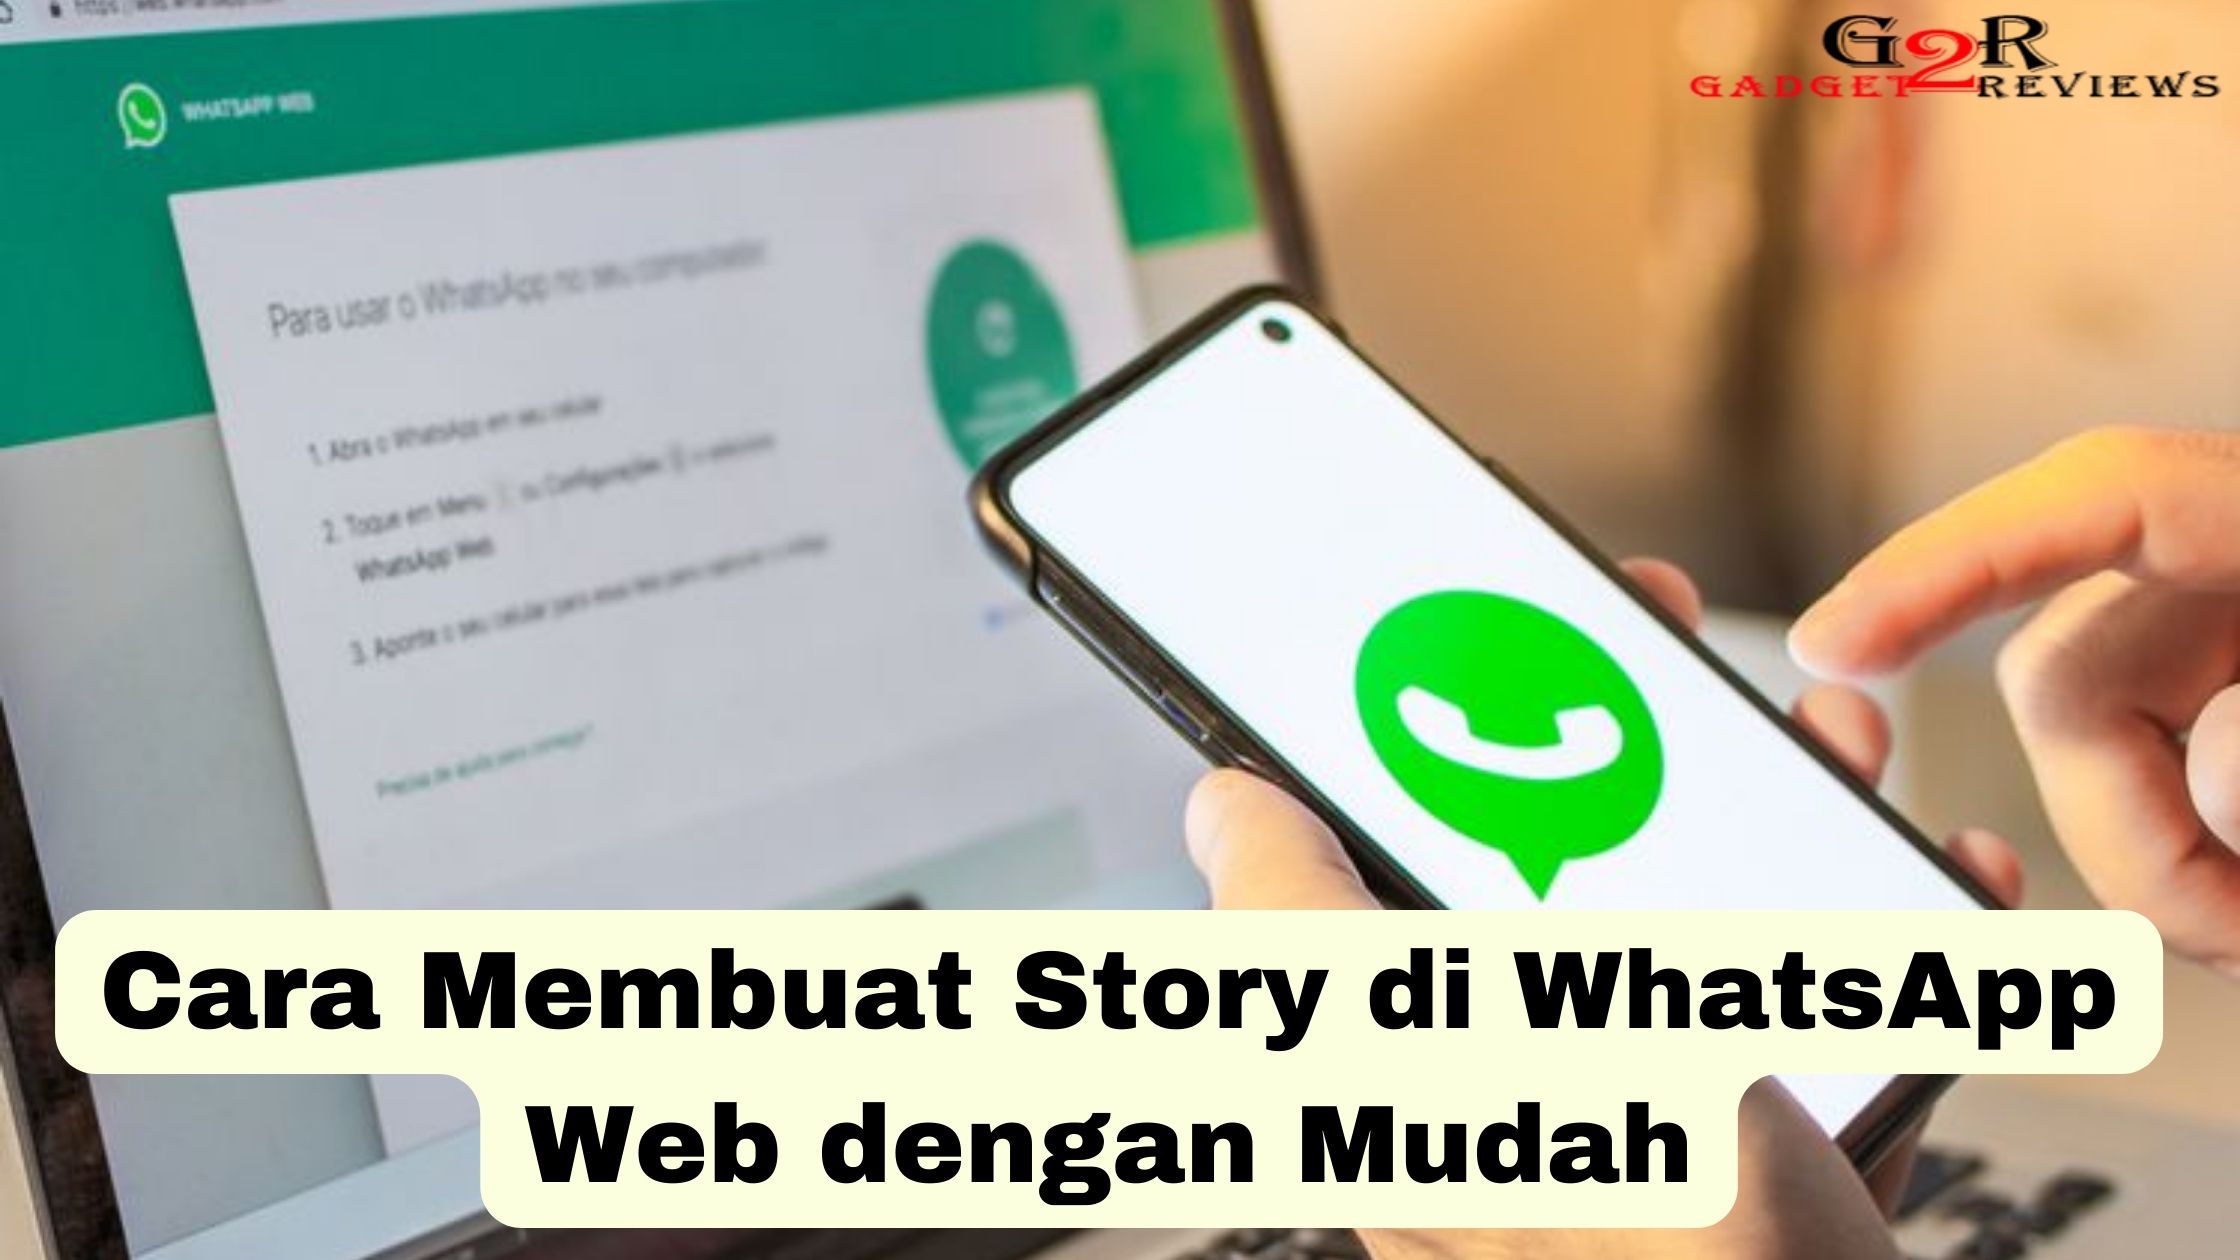 Cara Membuat Story di WhatsApp Web